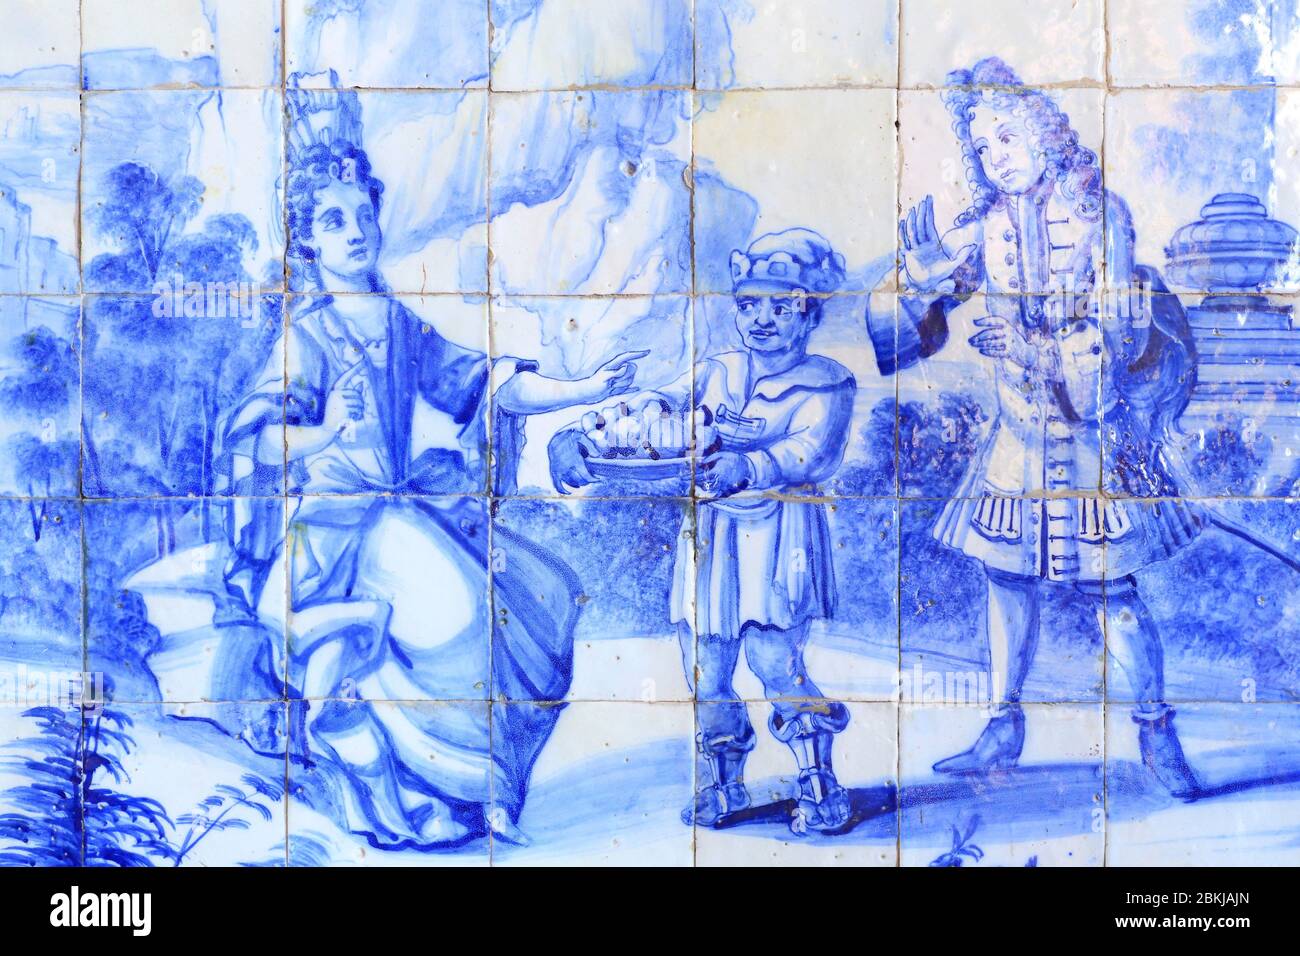 Portugal, Lisbonne, Xabregas, Palácio de Xabregas, palais privé des XVIIe et XVIIIe siècles, azulejos montant des aristocrates marchant dans un jardin avec un serviteur Banque D'Images